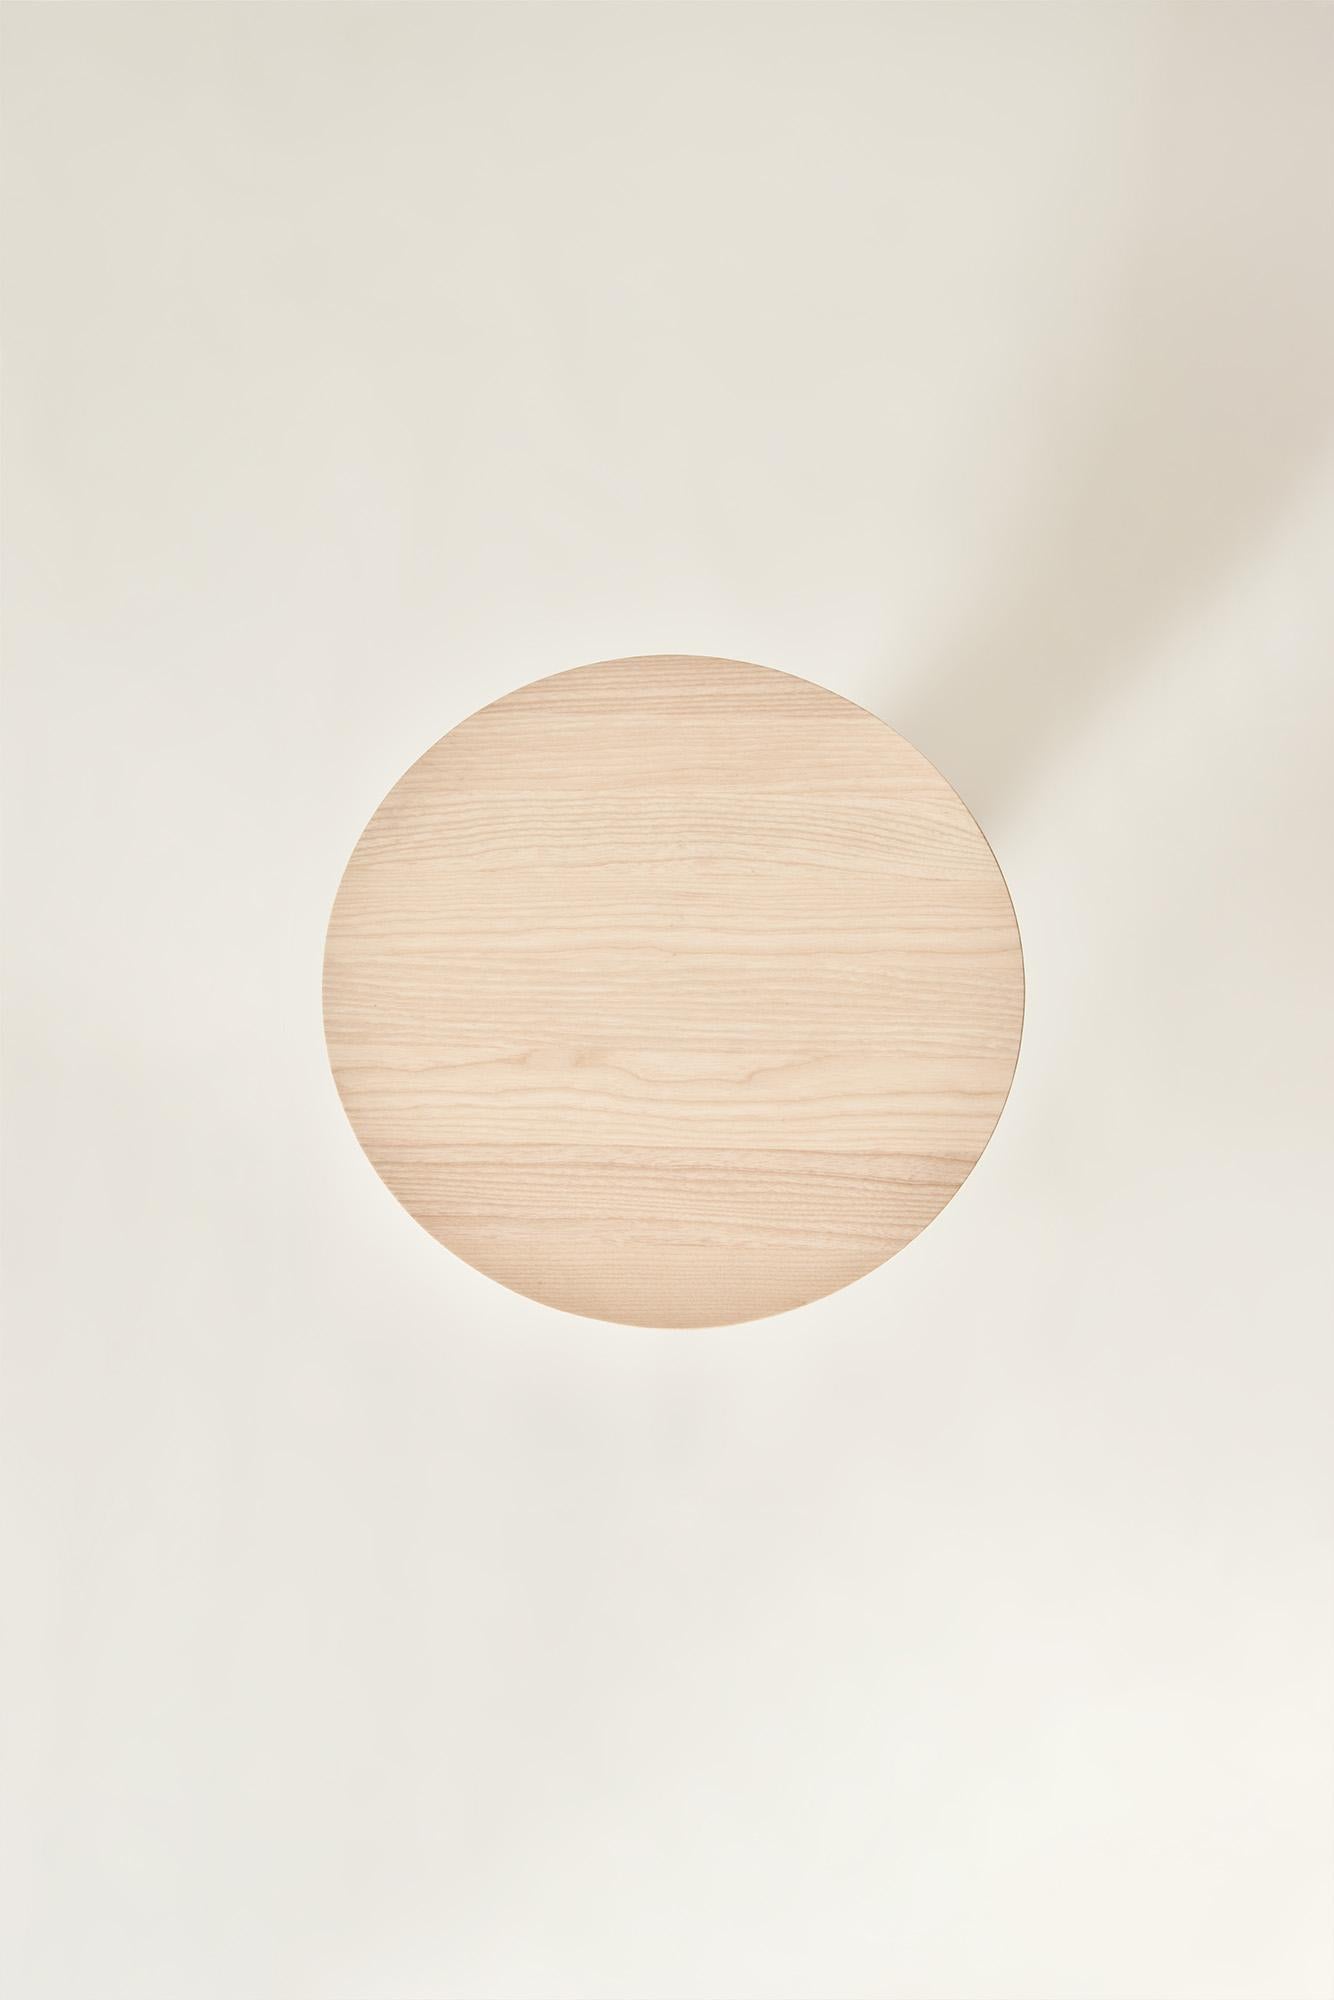 italien Table basse Convesso en bois massif, finition naturelle, contemporaine en vente